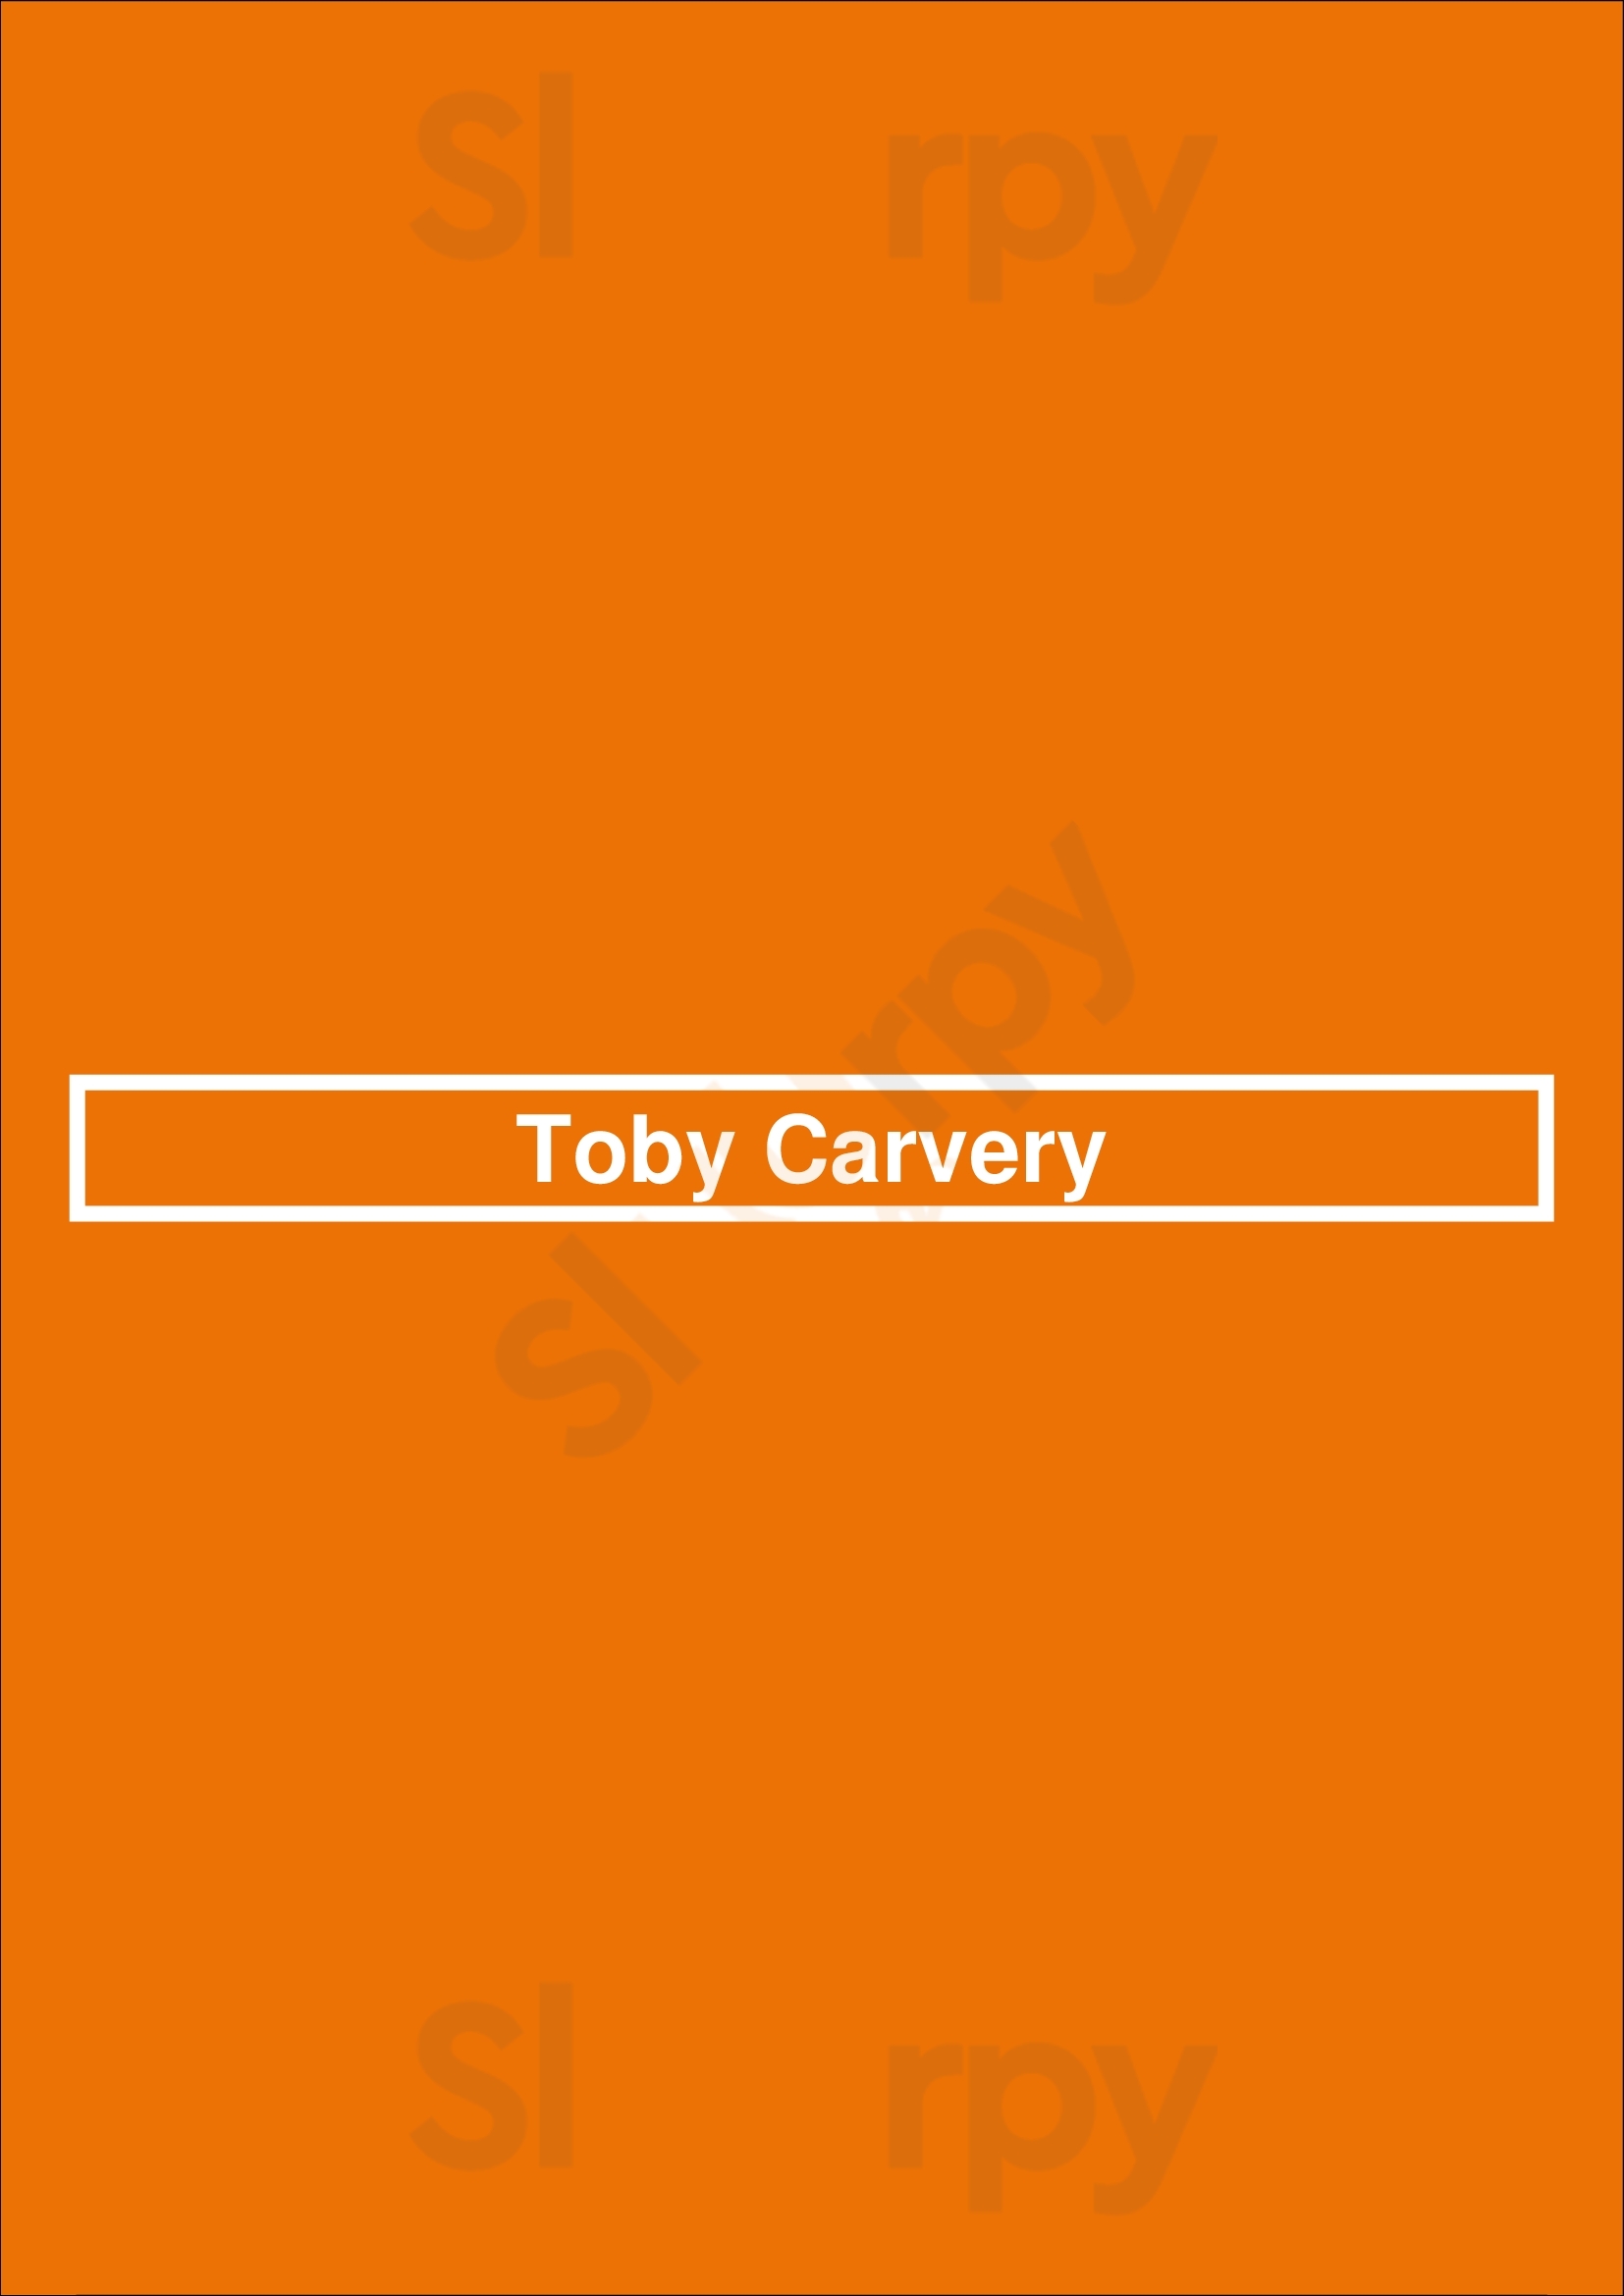 Toby Carvery Tipton Menu - 1